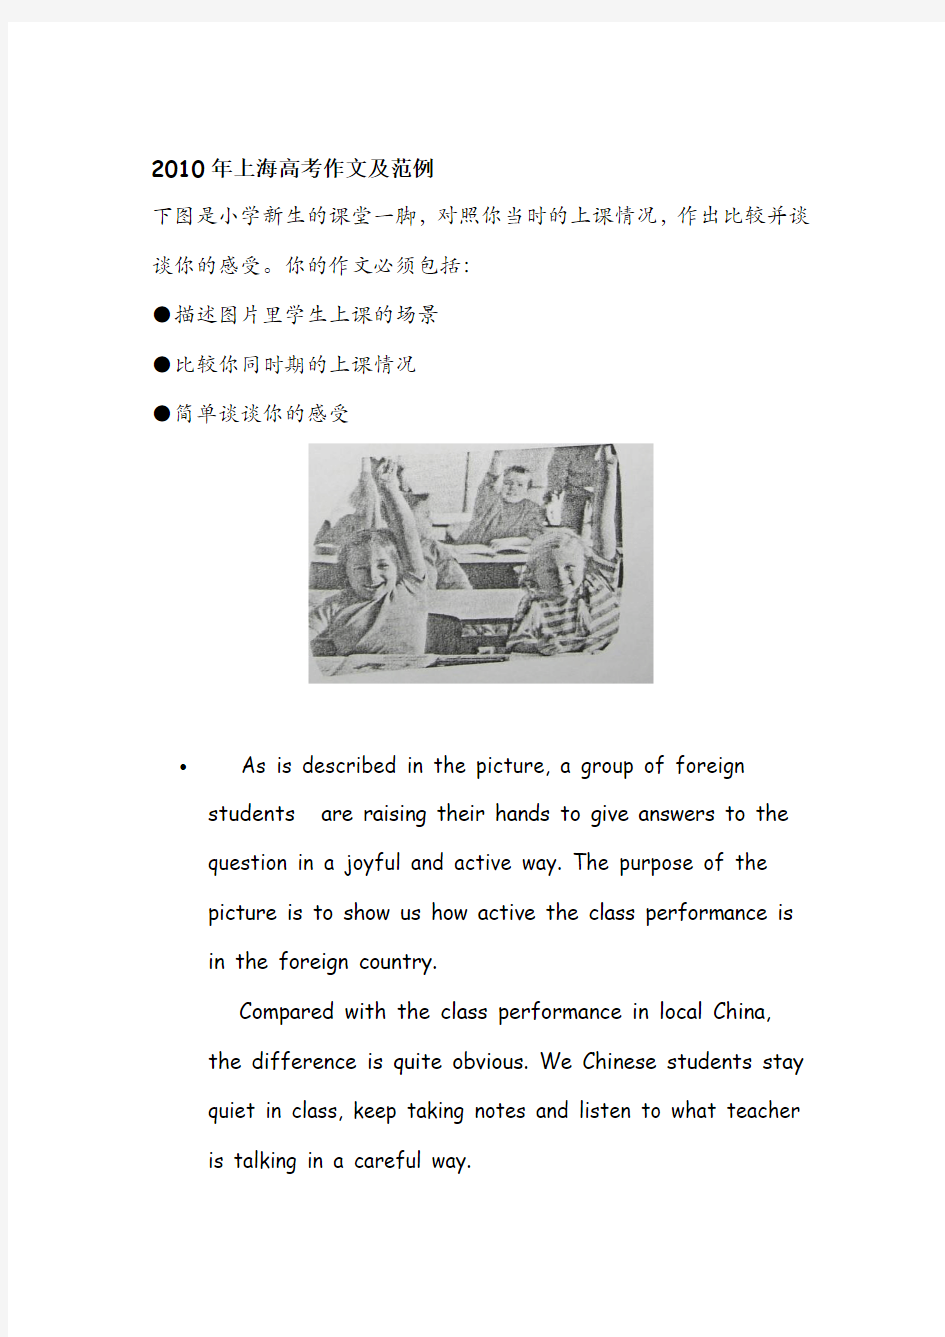 2005-2010上海高考英语作文题目及范文